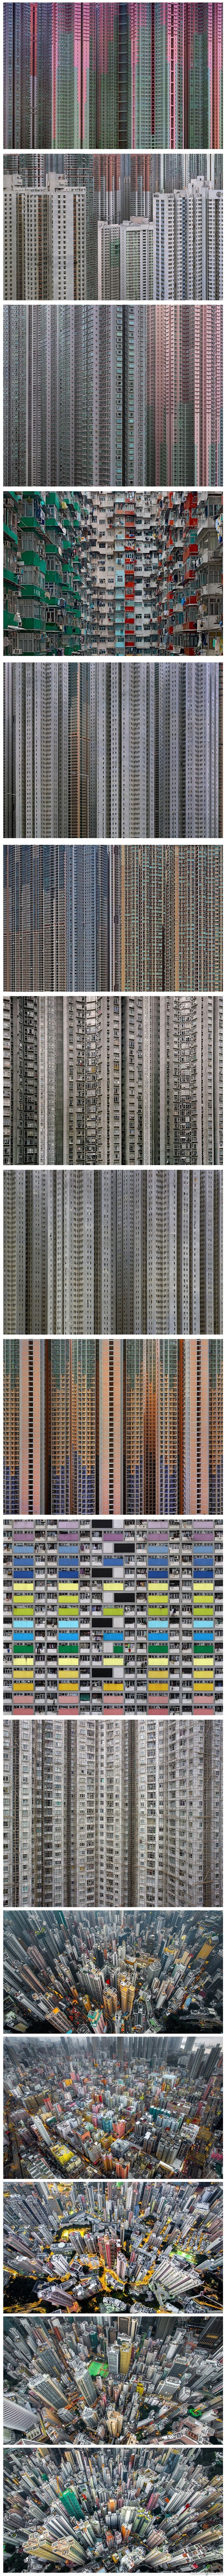 Hong Kong - 7 miljoonan asukkaan kaupunki. Melko psaikedeelinen näky tuo kerrostalohelvetti.